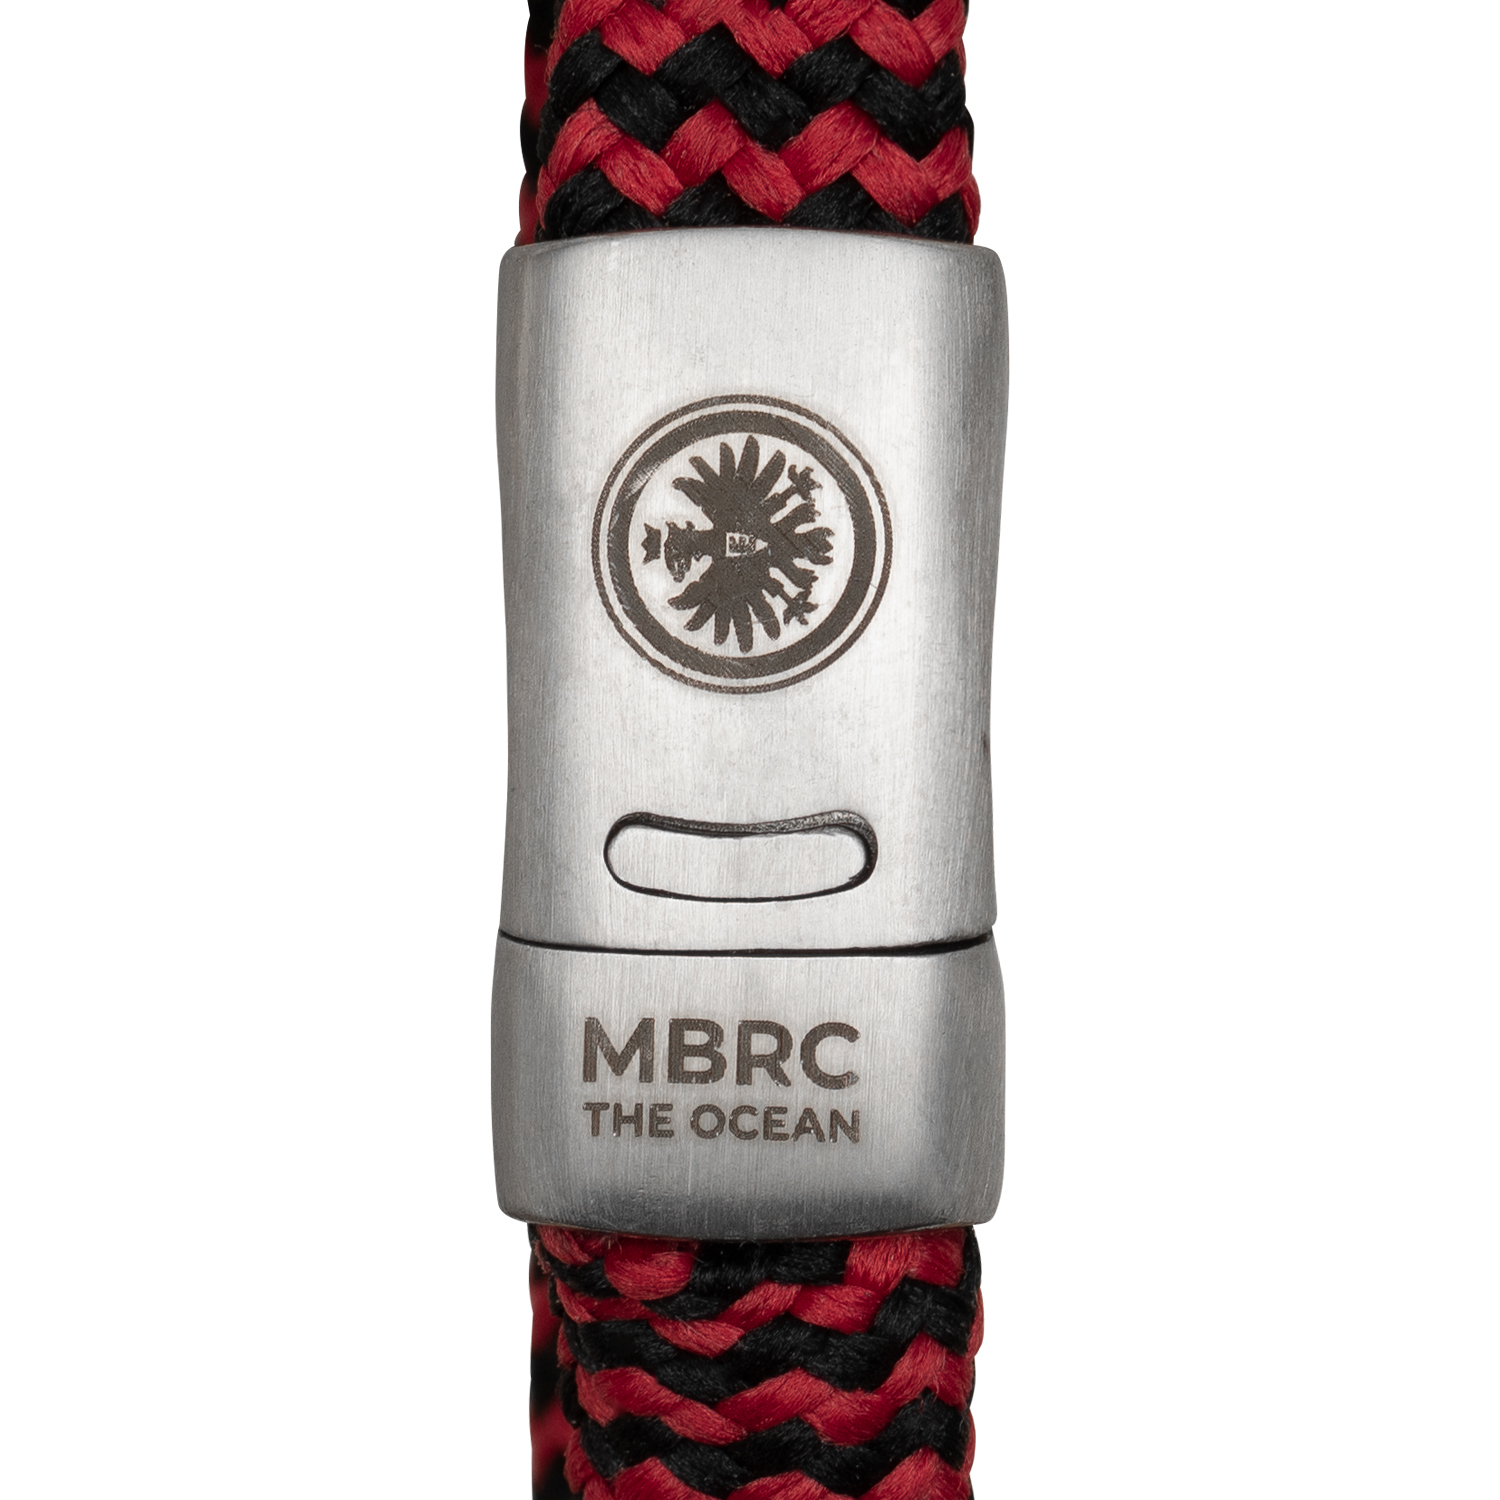 Bild 5: MBRC Armband Eintracht